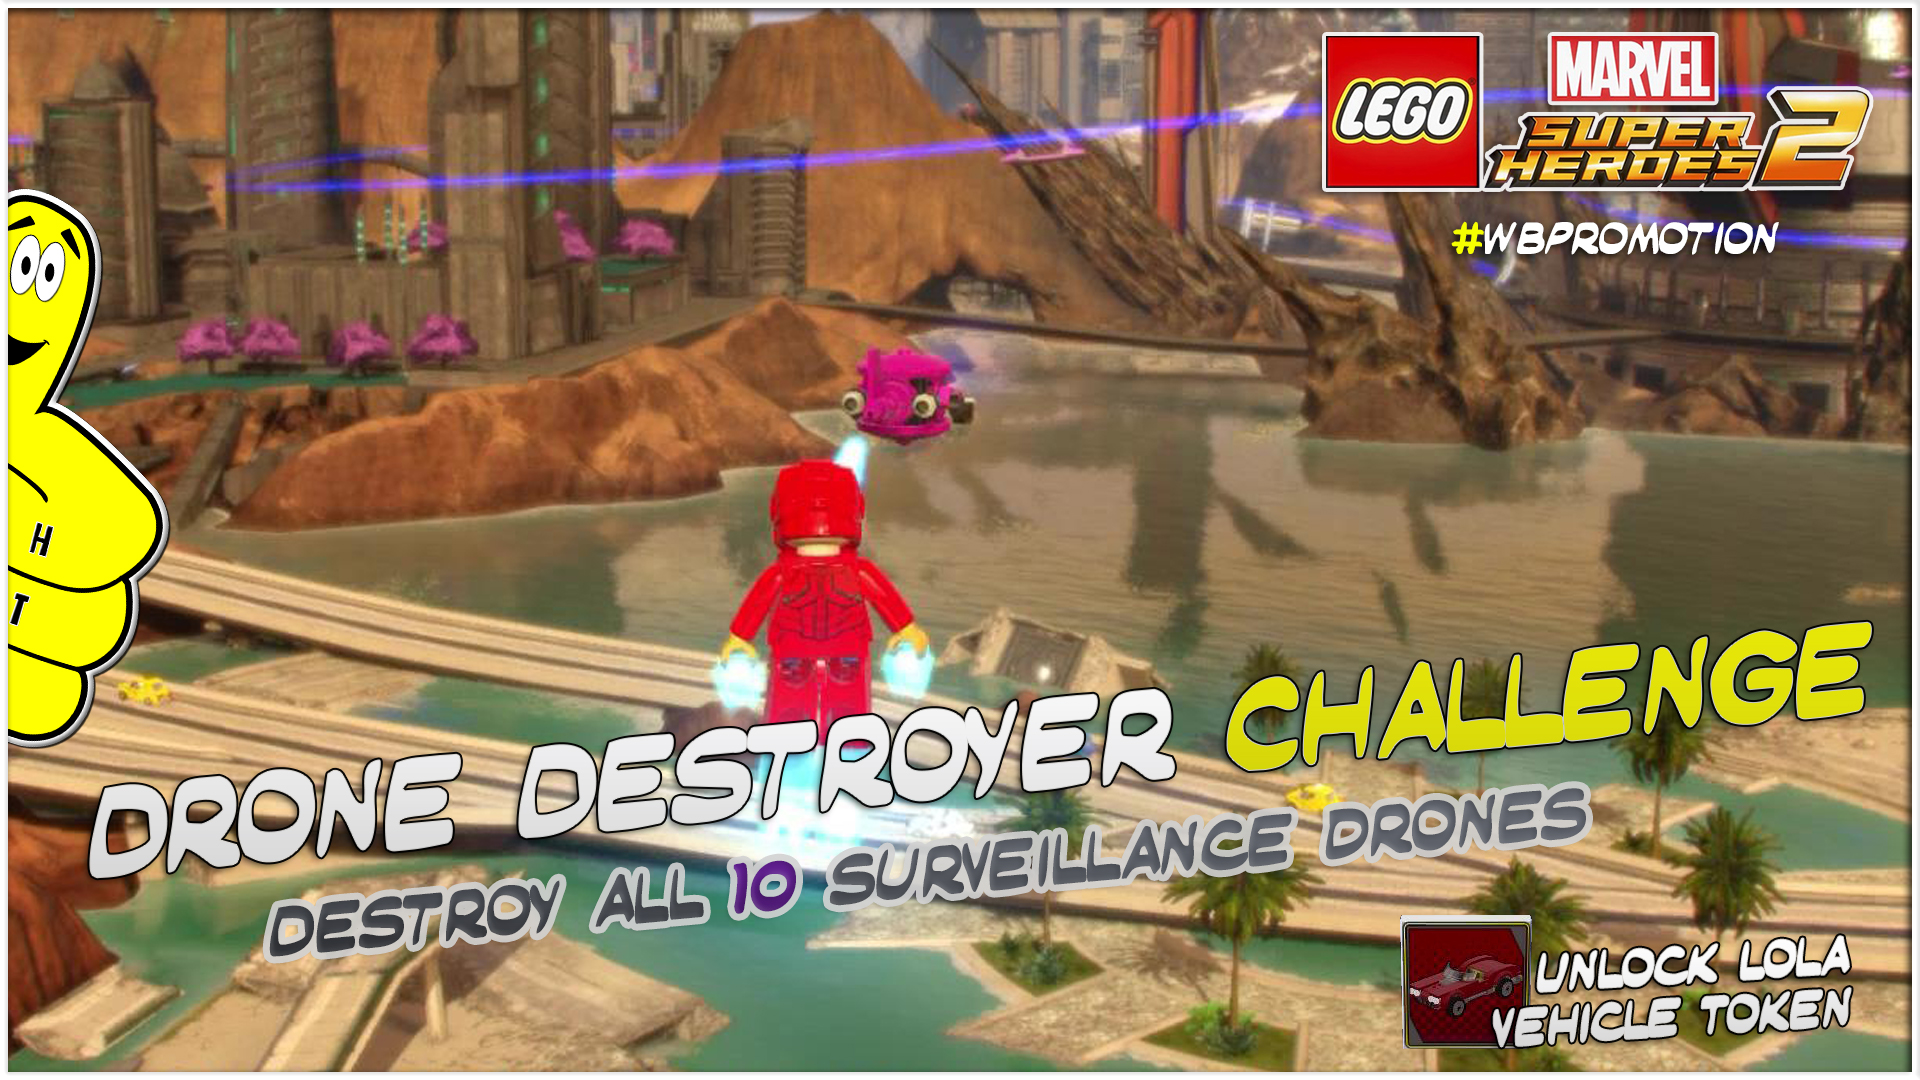 Lego Marvel Superheroes 2: Drone Destroyer Challenge – HTG